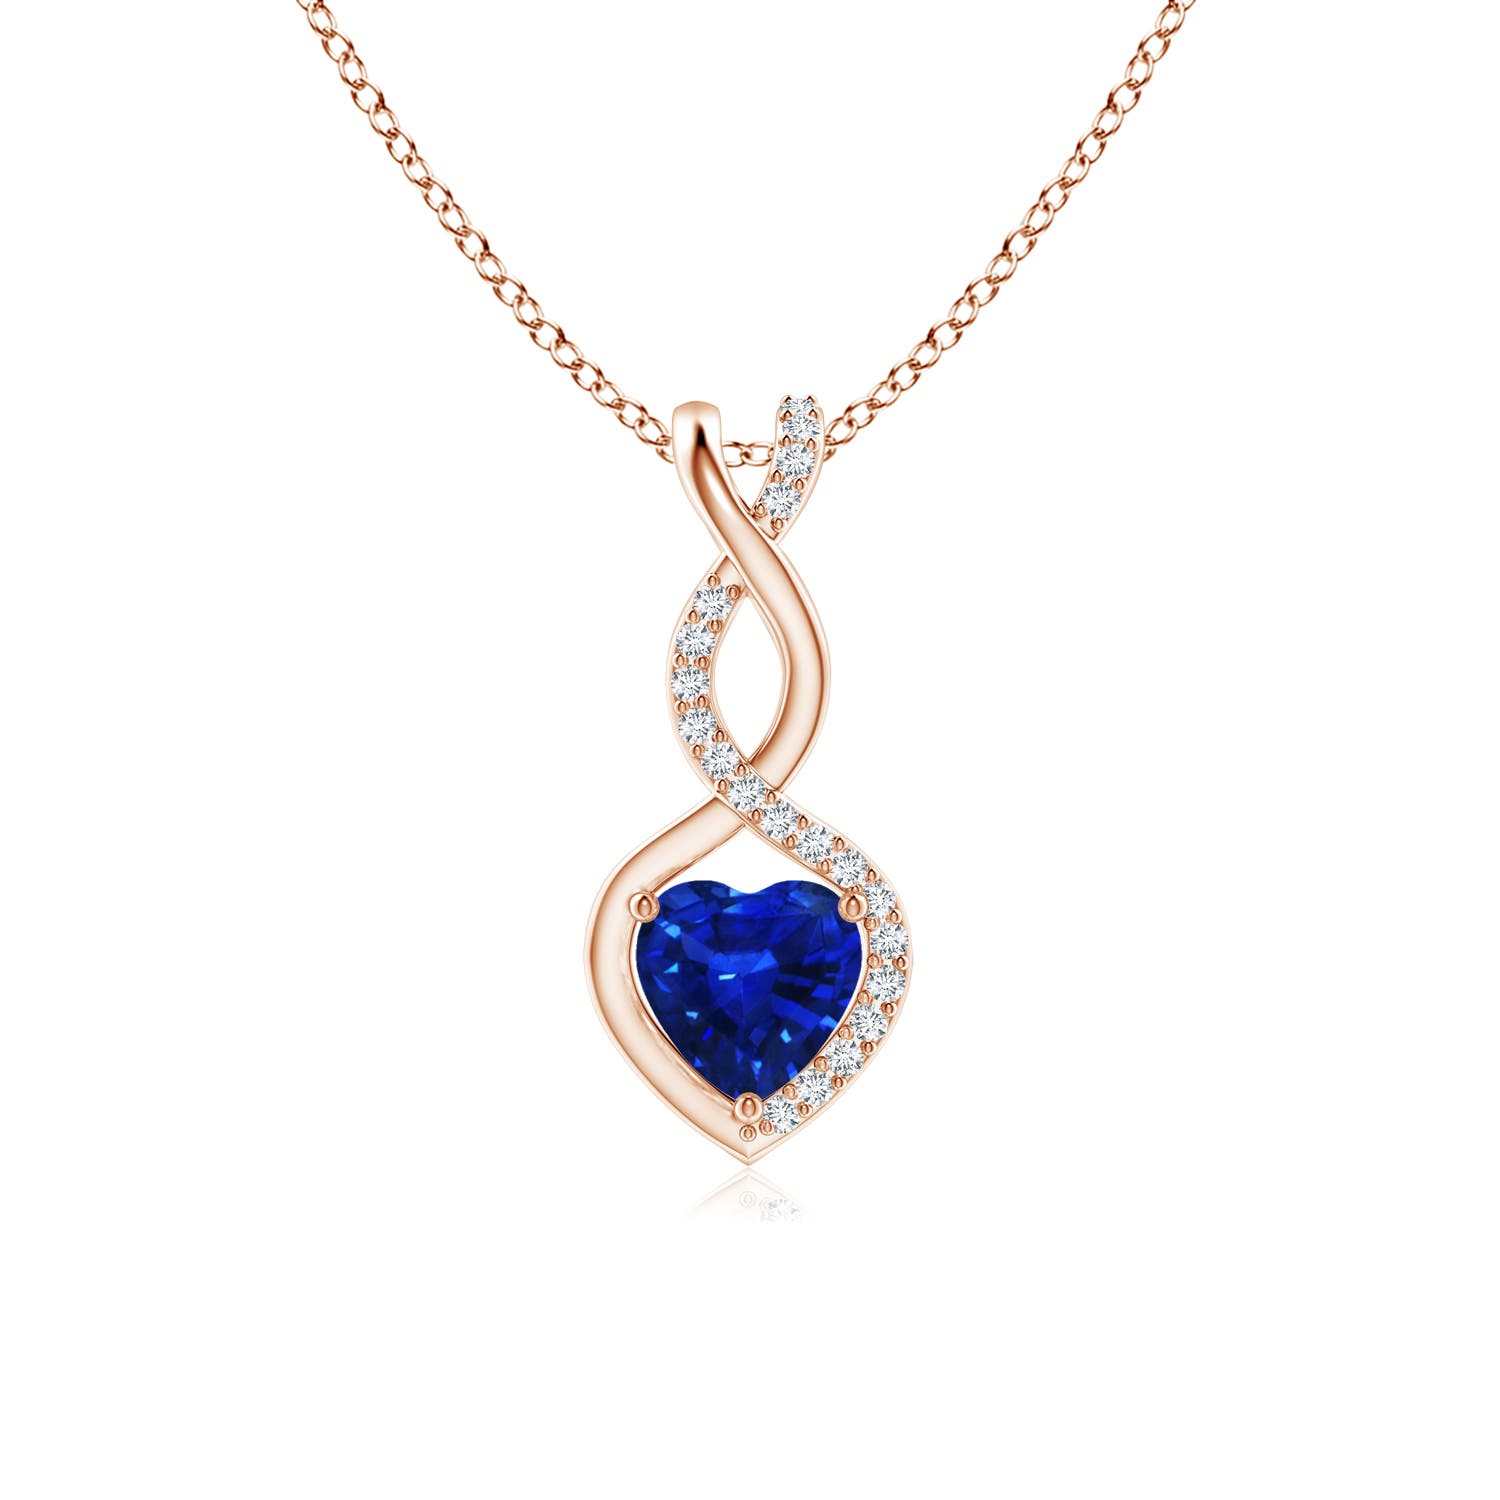 AAAA - Blue Sapphire / 0.54 CT / 14 KT Rose Gold